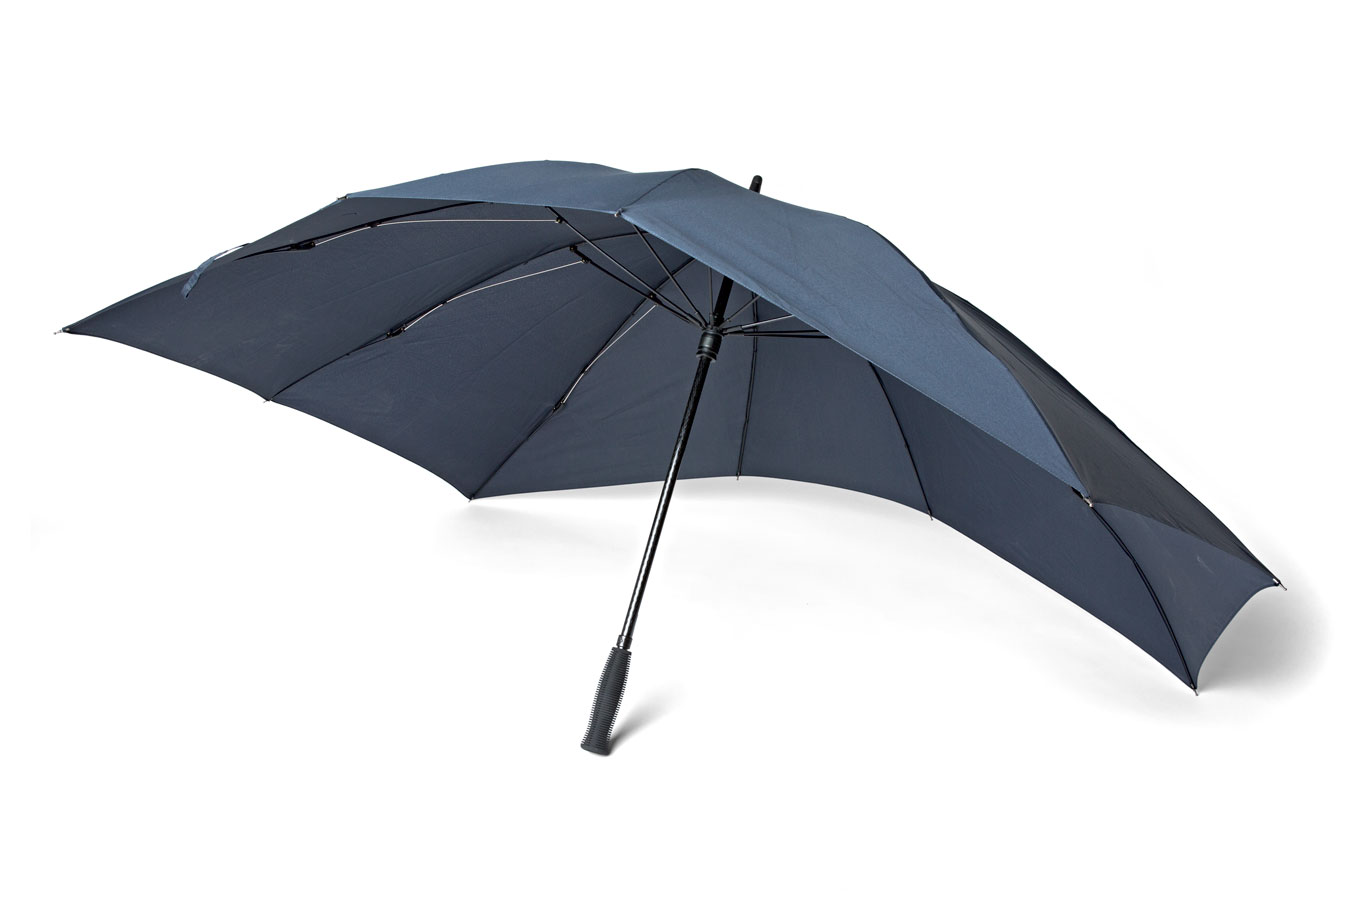 Regenschirm
Umbrella
Parapluie
Paraplu
Paraaguas